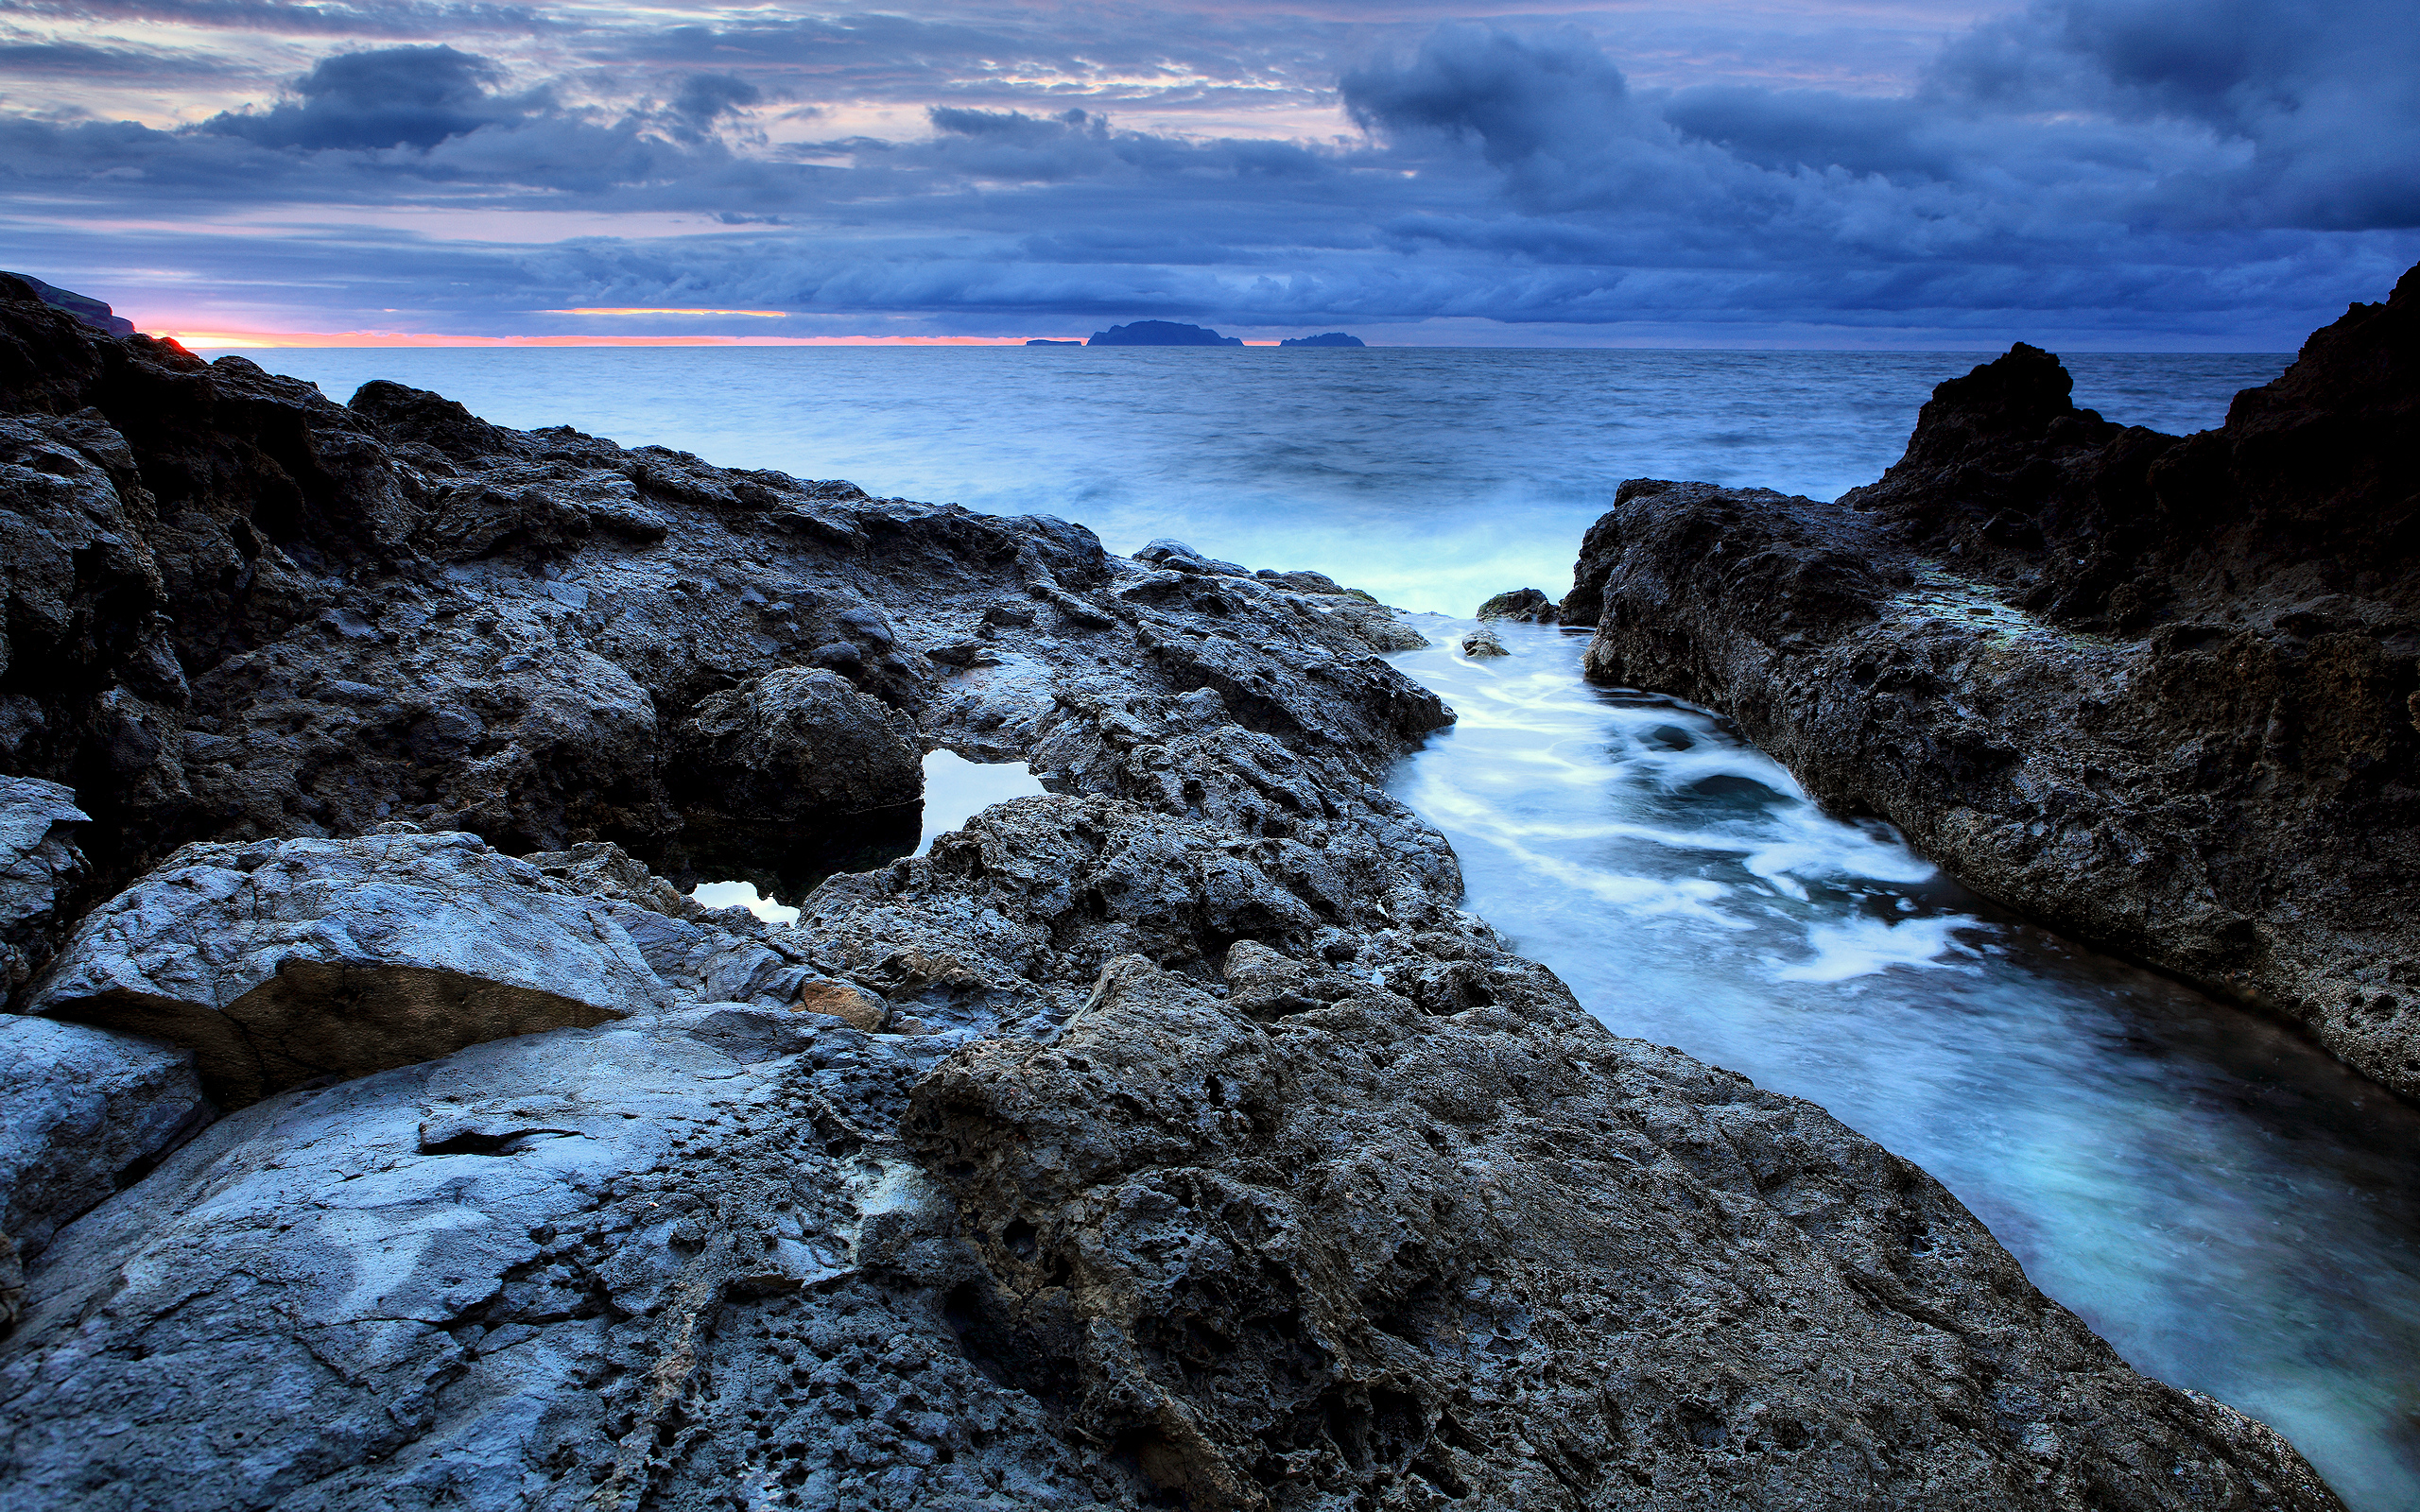 Обои 2560 1600. Мадейра скалы море. Морской заповедник Саут-Уотер-Кей,. Океан. Реки в океане.